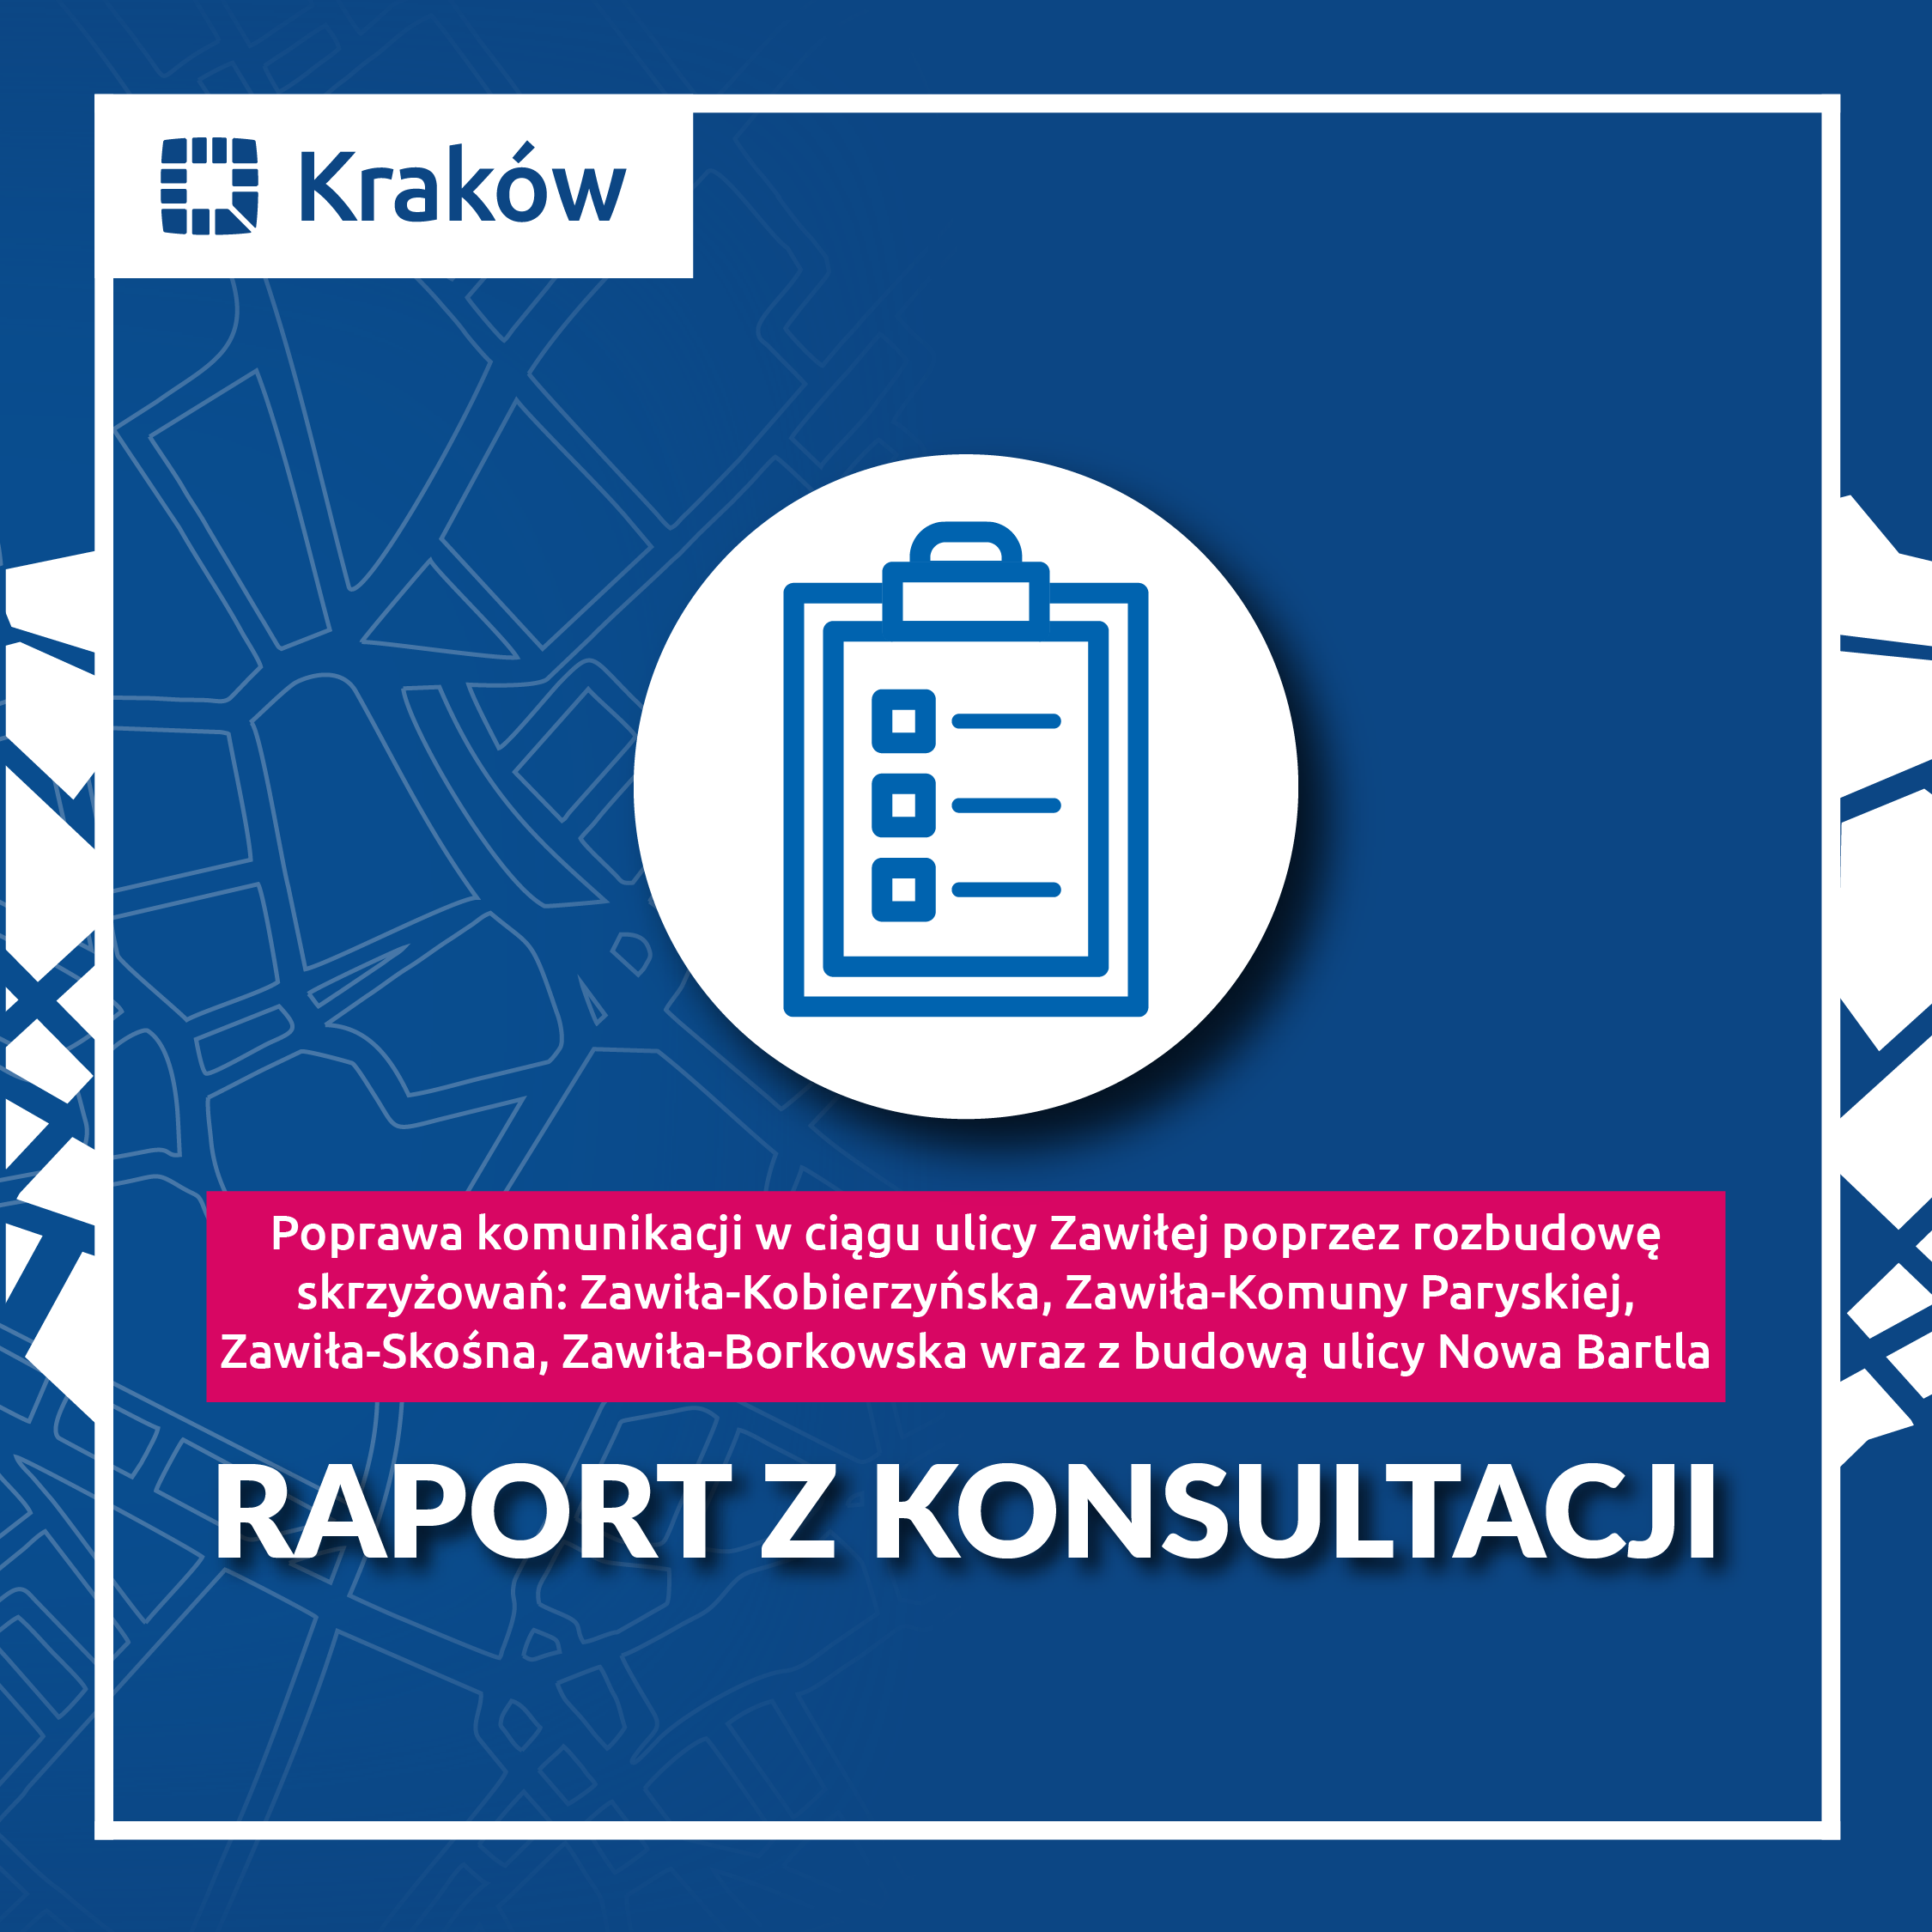 Raport z konsultacji w zakresie poprawy komunikacji w ciągu ulicy Zawiłej i budowy ulicy Nowej Bartla